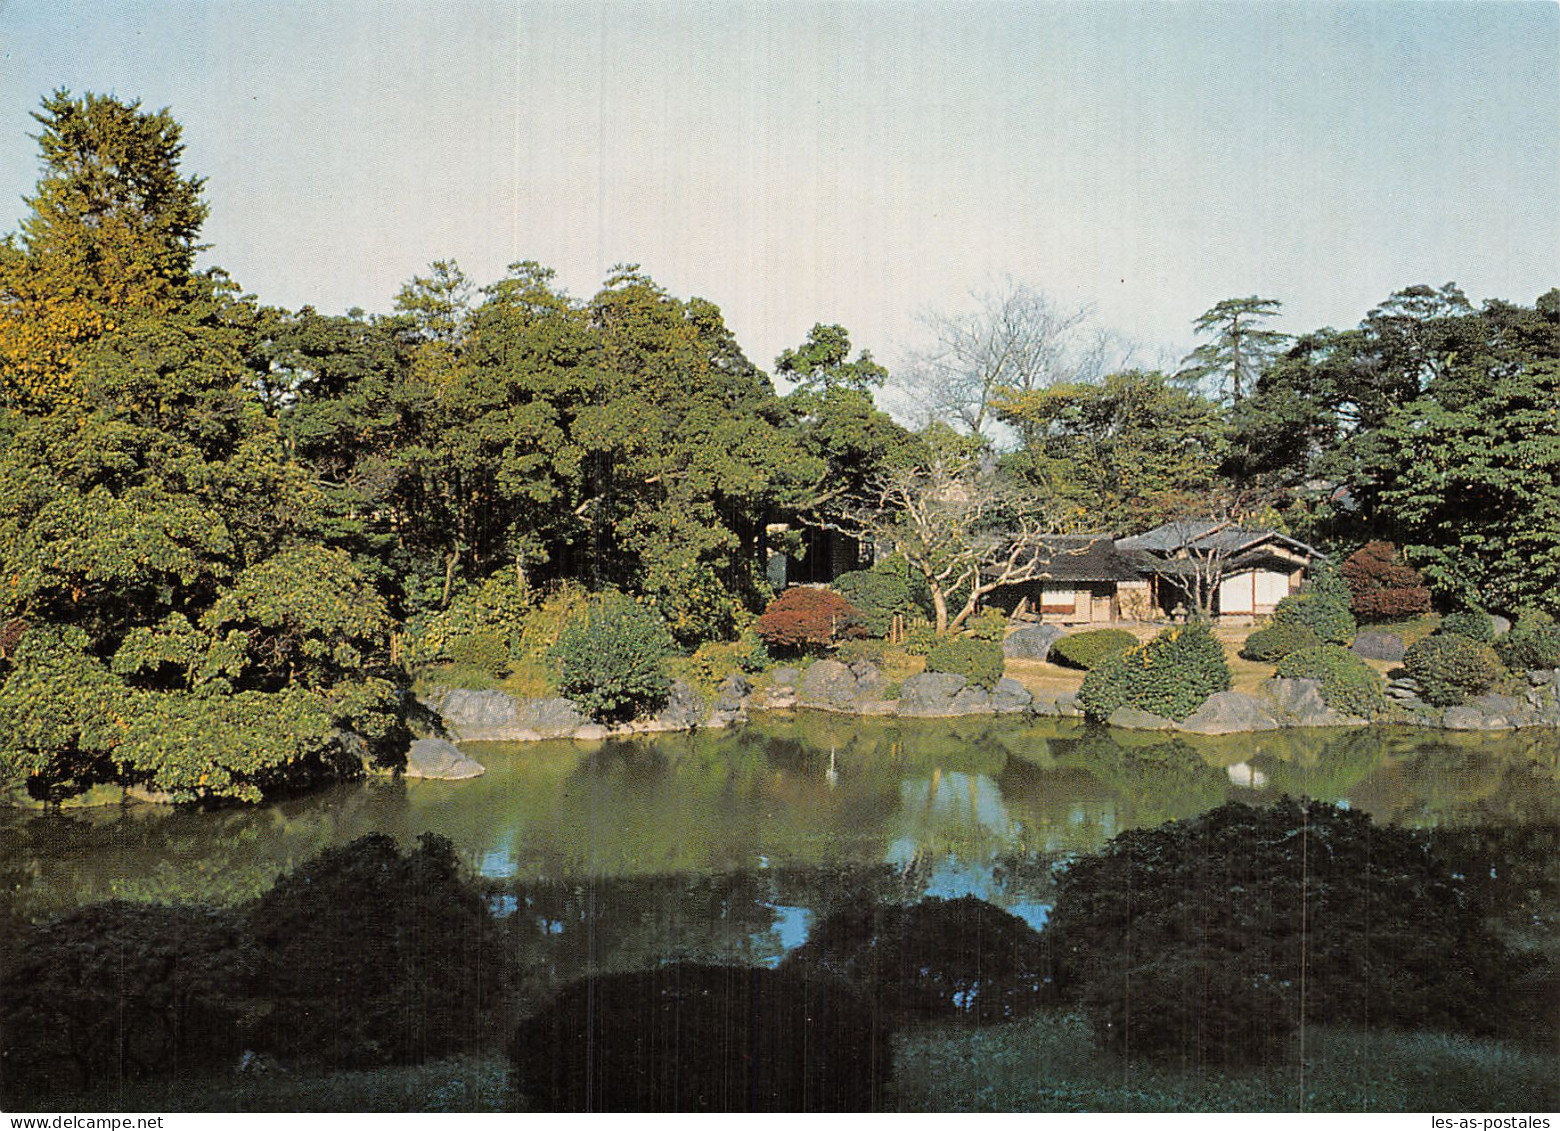 JAPON KYOTO TENGO AN ACROS - Kyoto